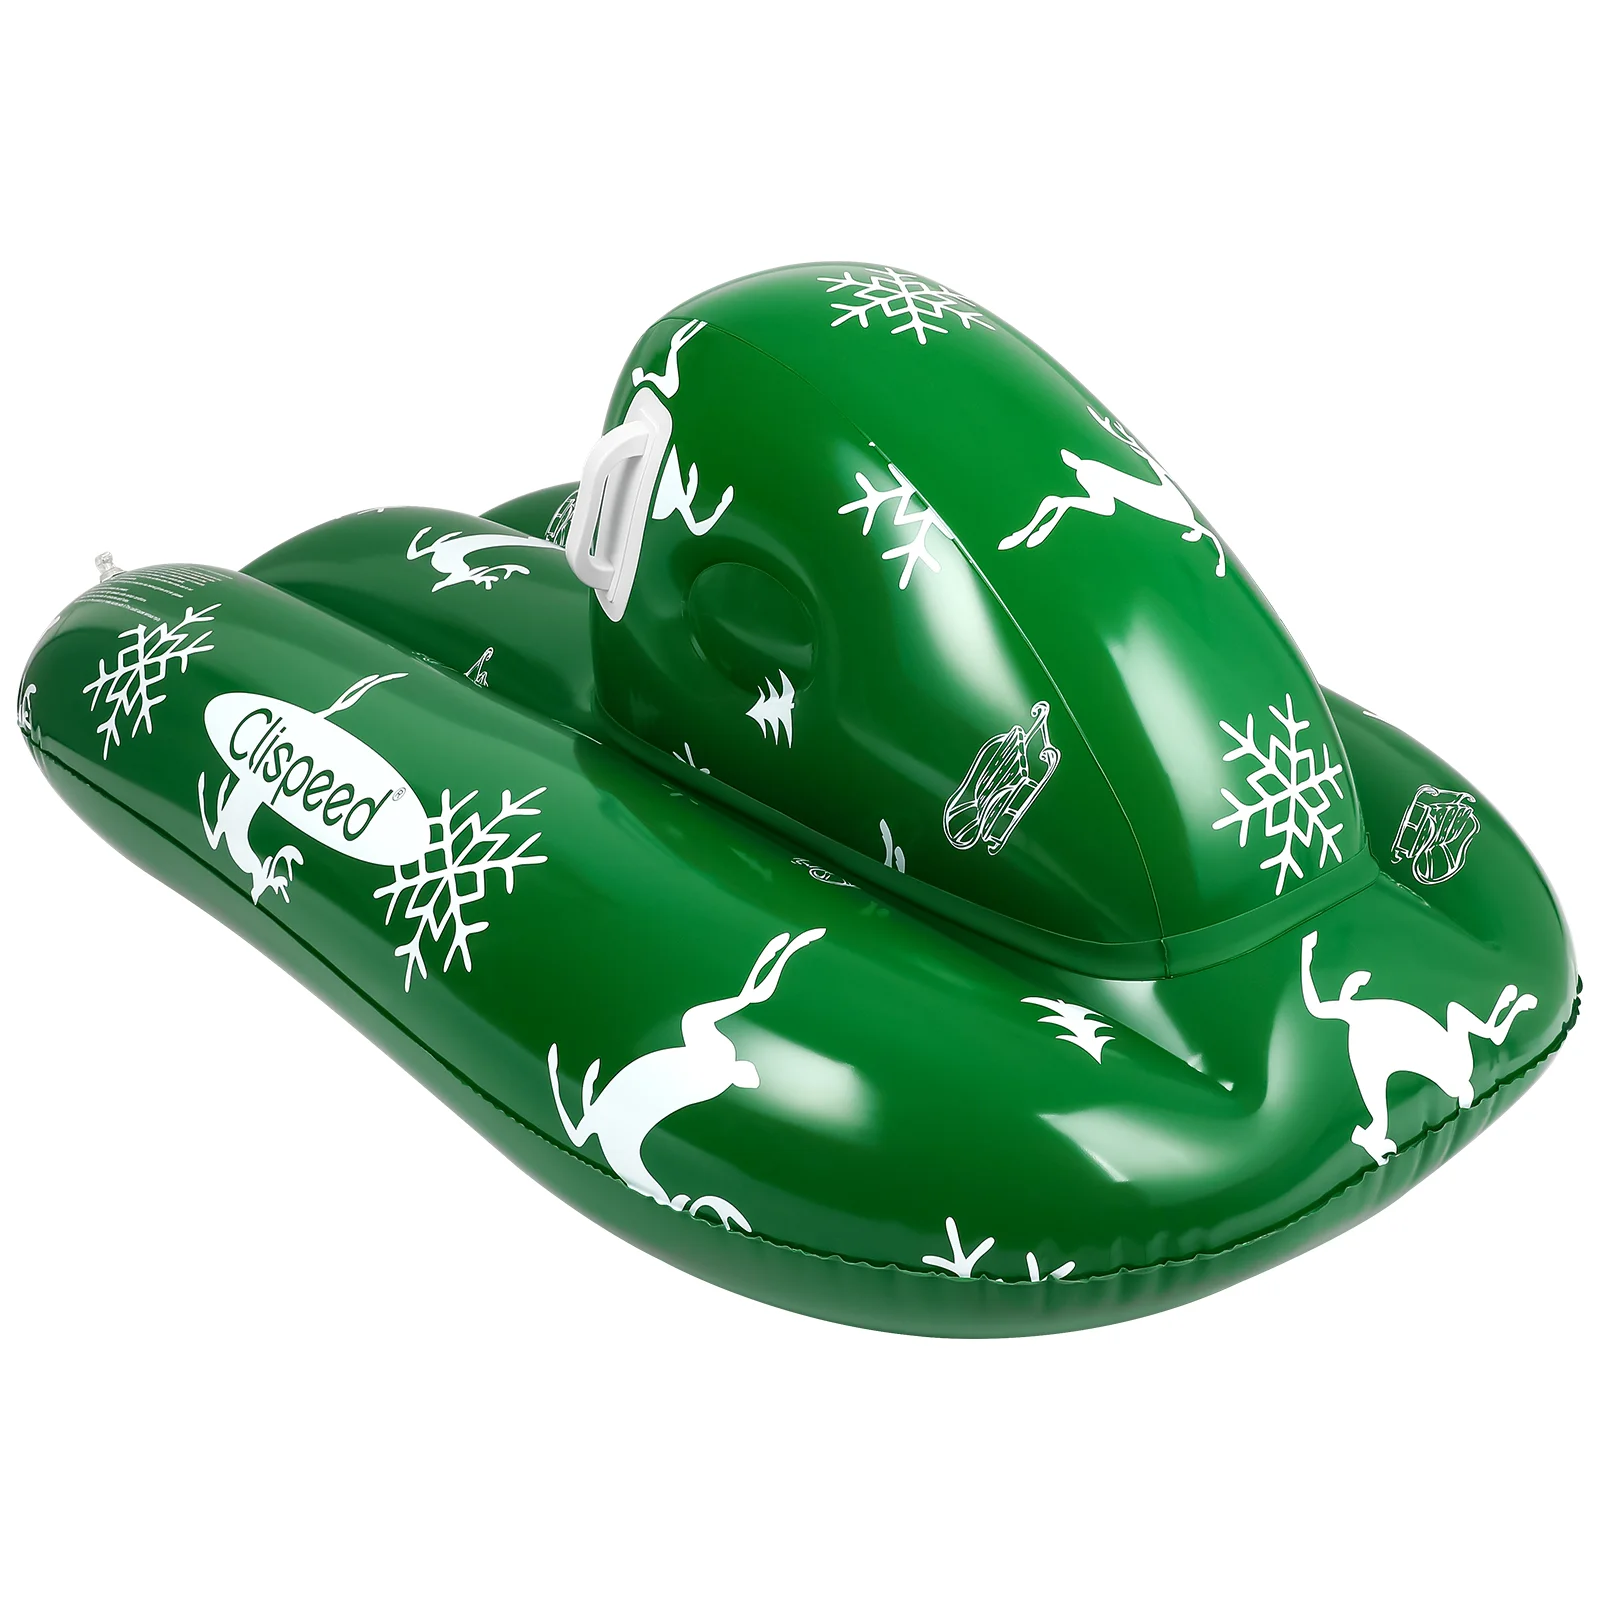 

Зимние надувные санки clдовые с ручками повышенной прочности для детей и взрослых (зеленый)